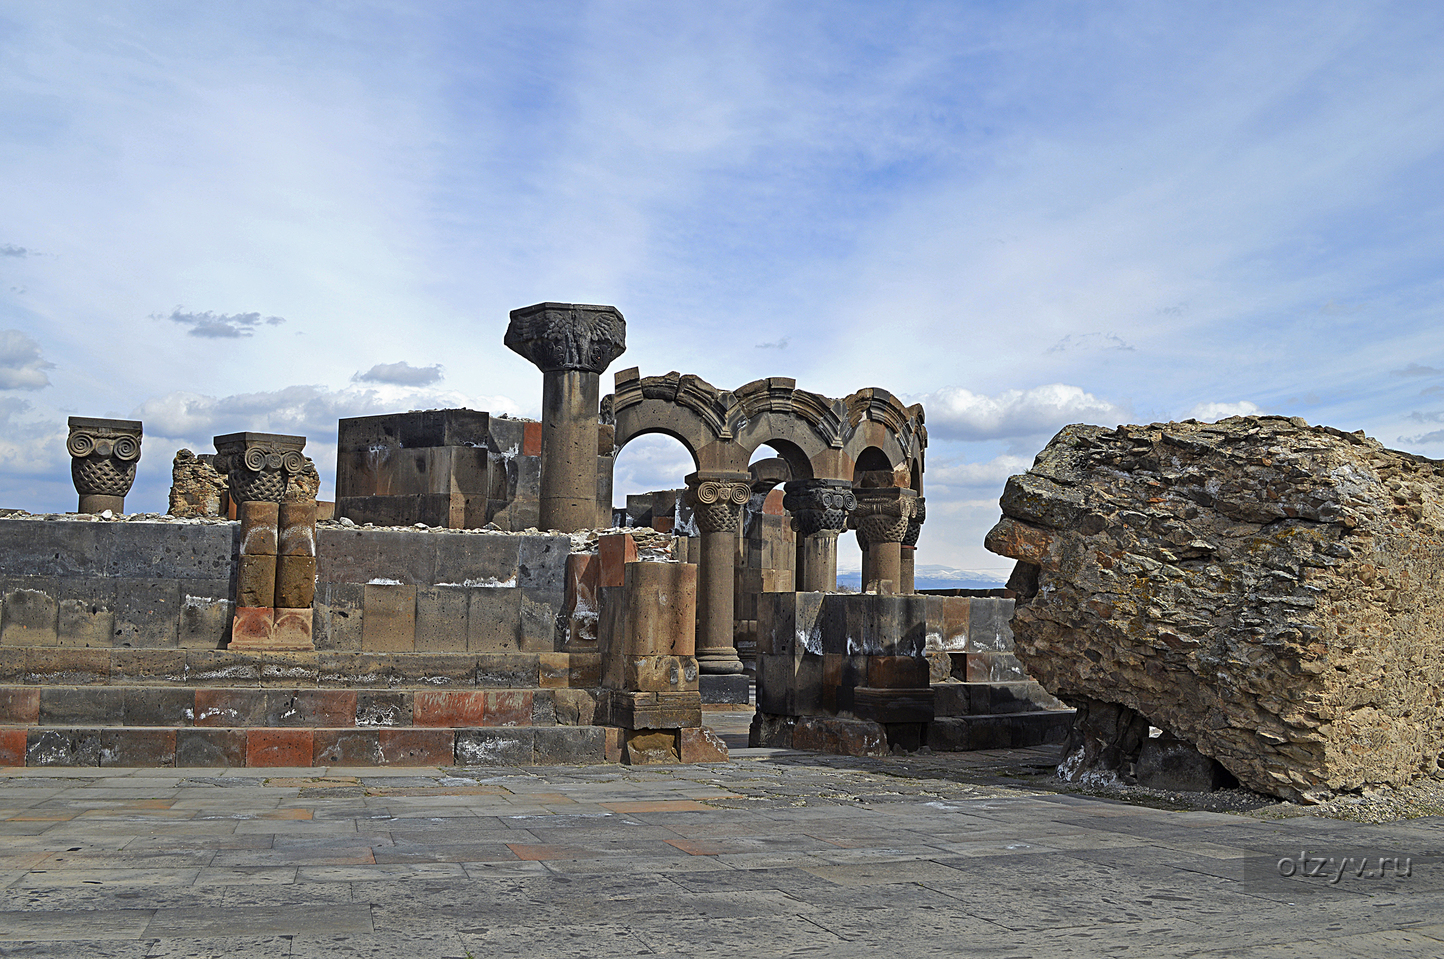 Где находится звартноц. Руины храма Звартноц. Эчмиадзин Звартноц. Храм Звартноц в Армении. Ереван - Эчмиадзин - храм Звартноц.